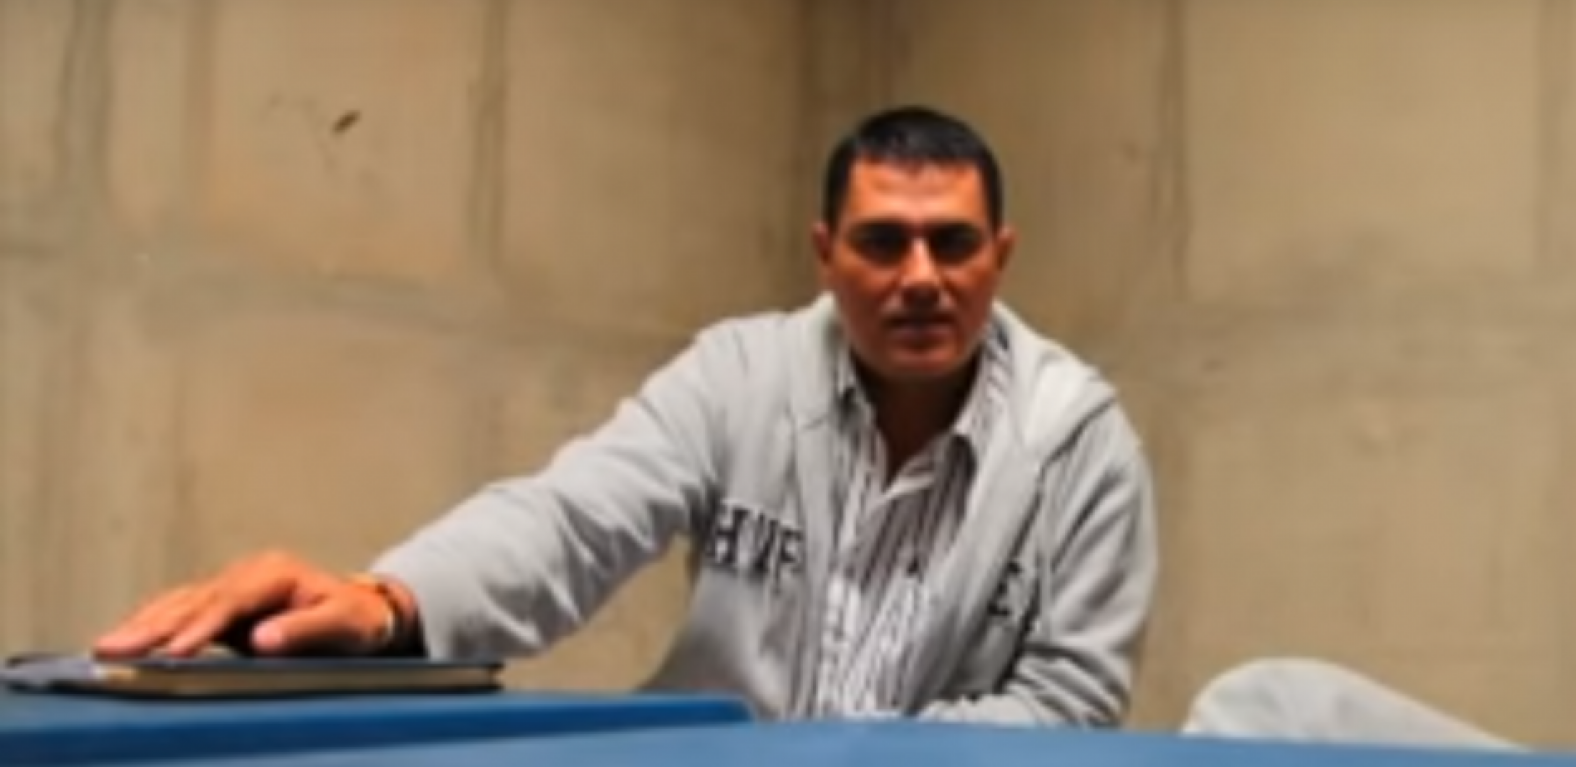 El ajedrez penitenciario de Juan Guillermo Monsalve, el testigo clave  contra el senador Álvaro Uribe | Agenciapi.co